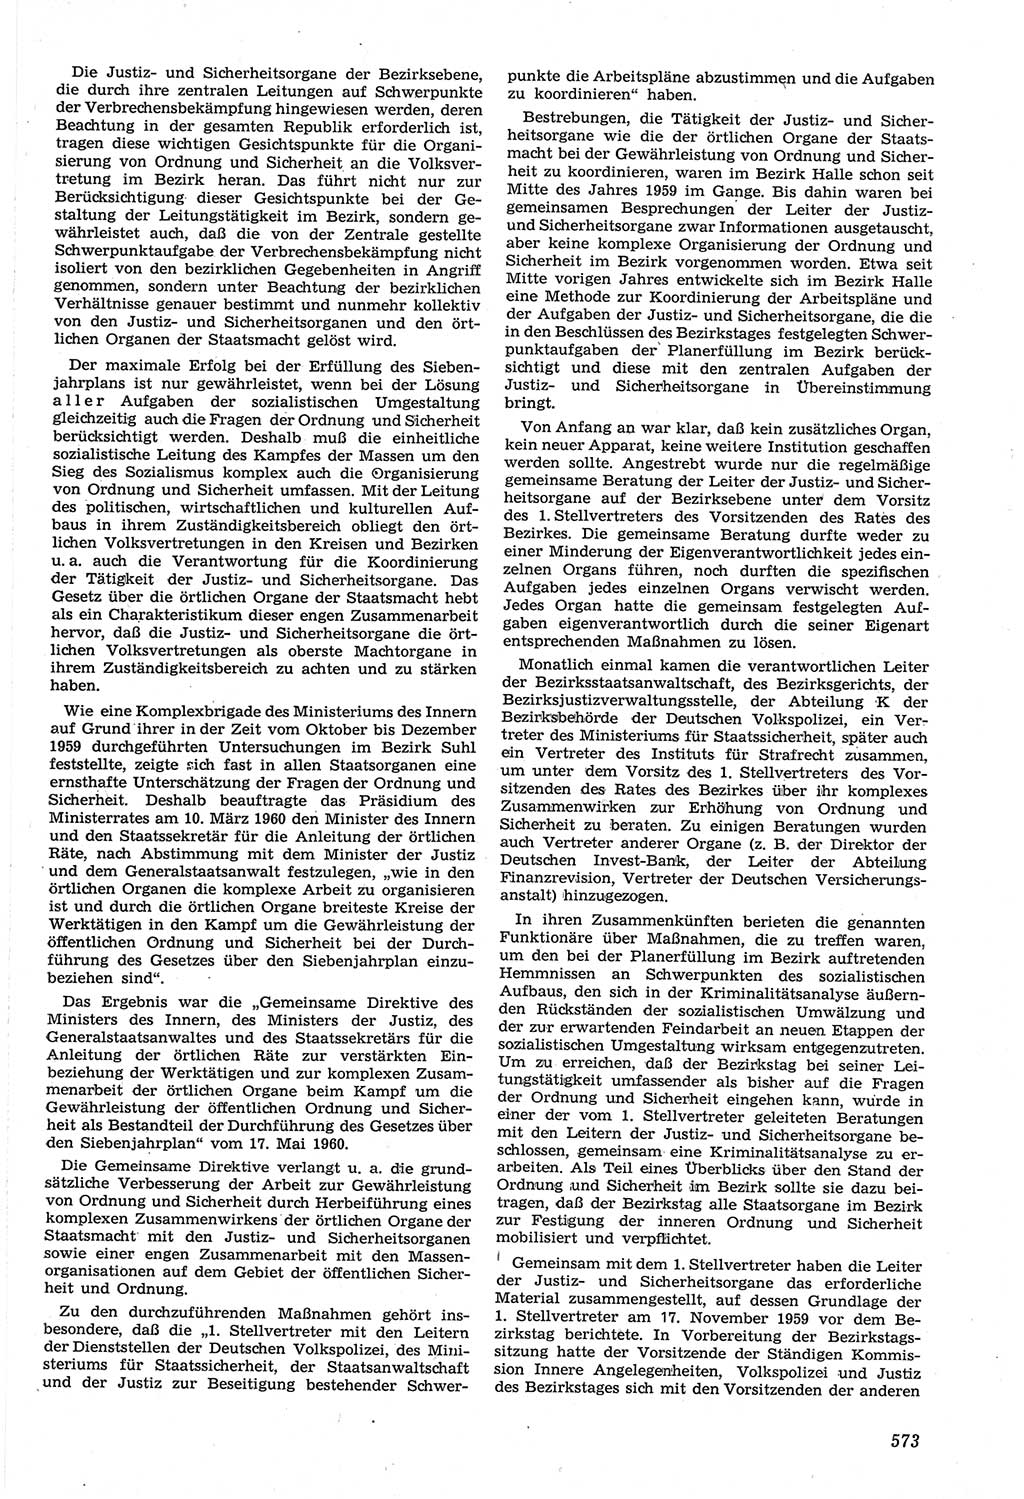 Neue Justiz (NJ), Zeitschrift für Recht und Rechtswissenschaft [Deutsche Demokratische Republik (DDR)], 14. Jahrgang 1960, Seite 573 (NJ DDR 1960, S. 573)